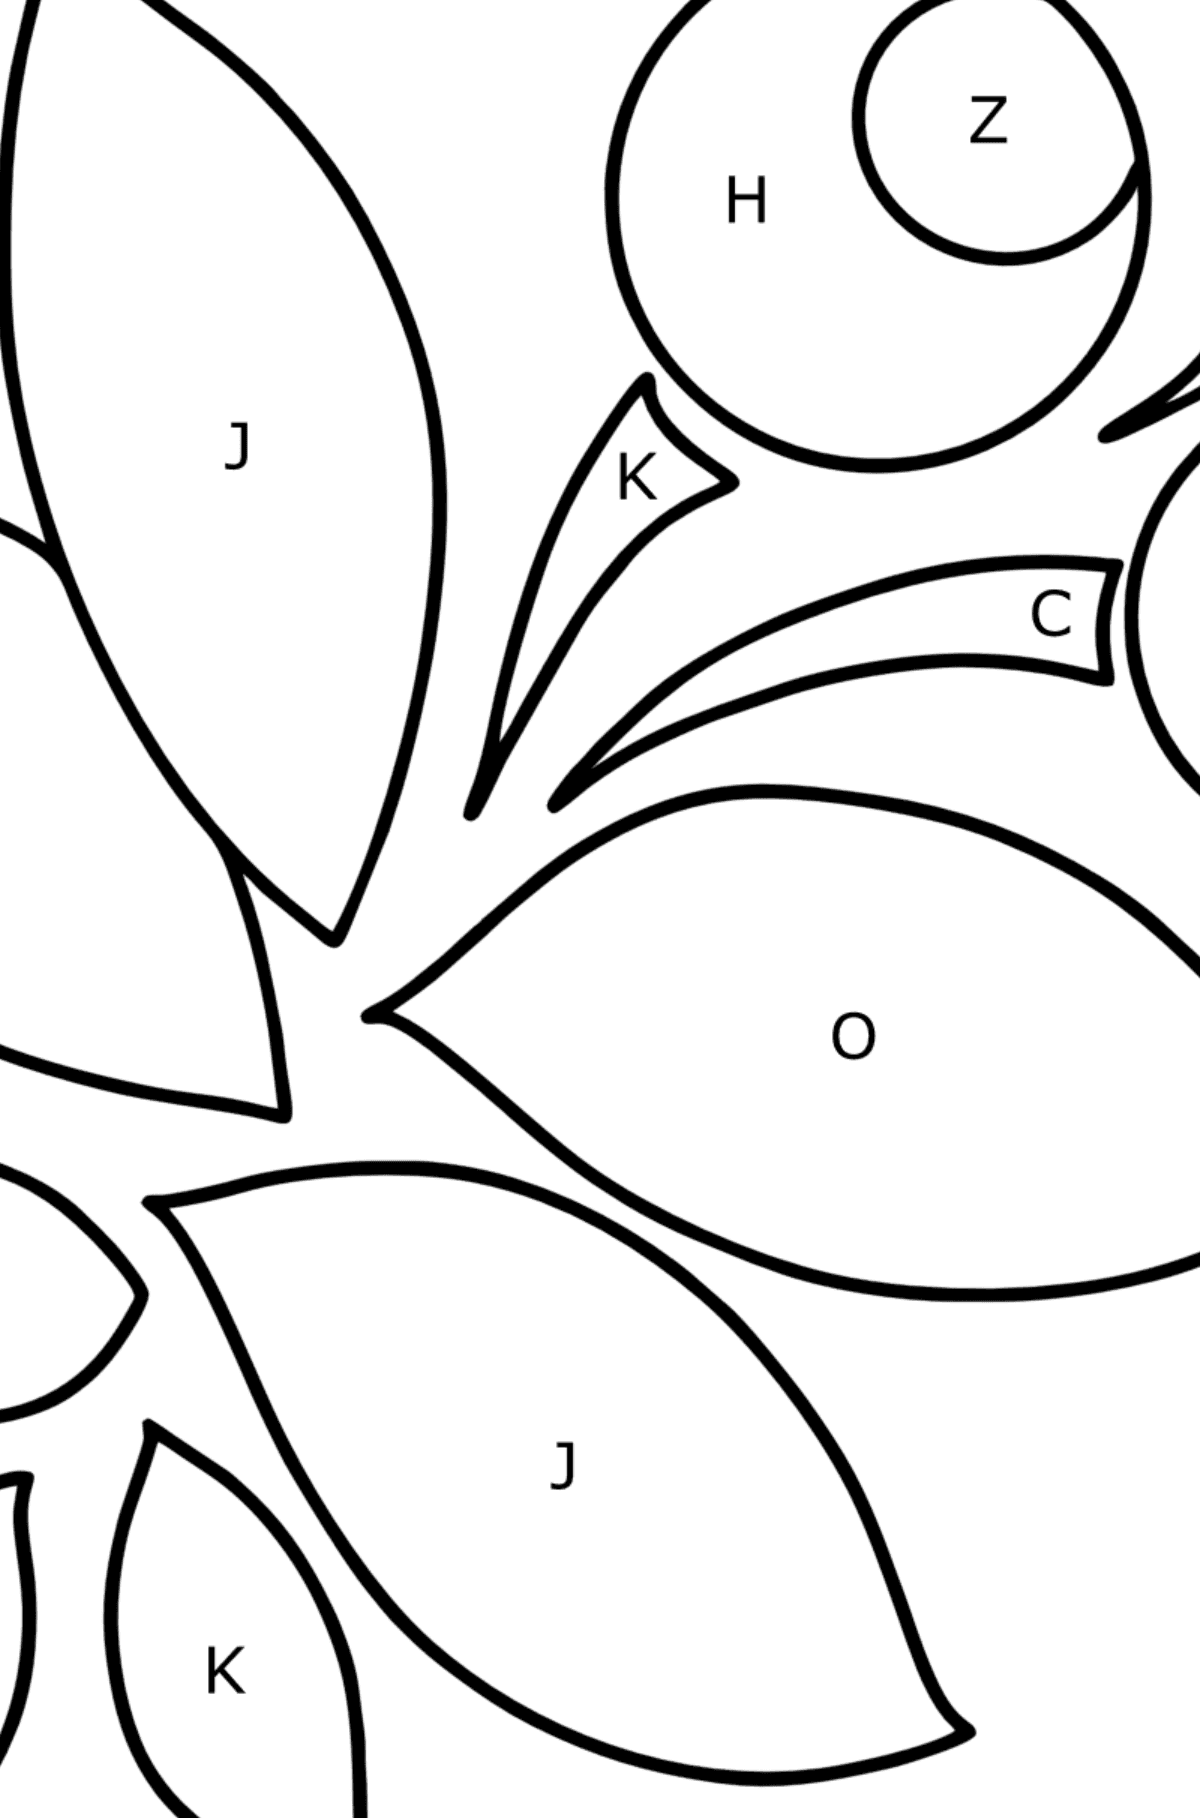 Ausmalbild Zentangle Art - Ausmalen nach Buchstaben für Kinder